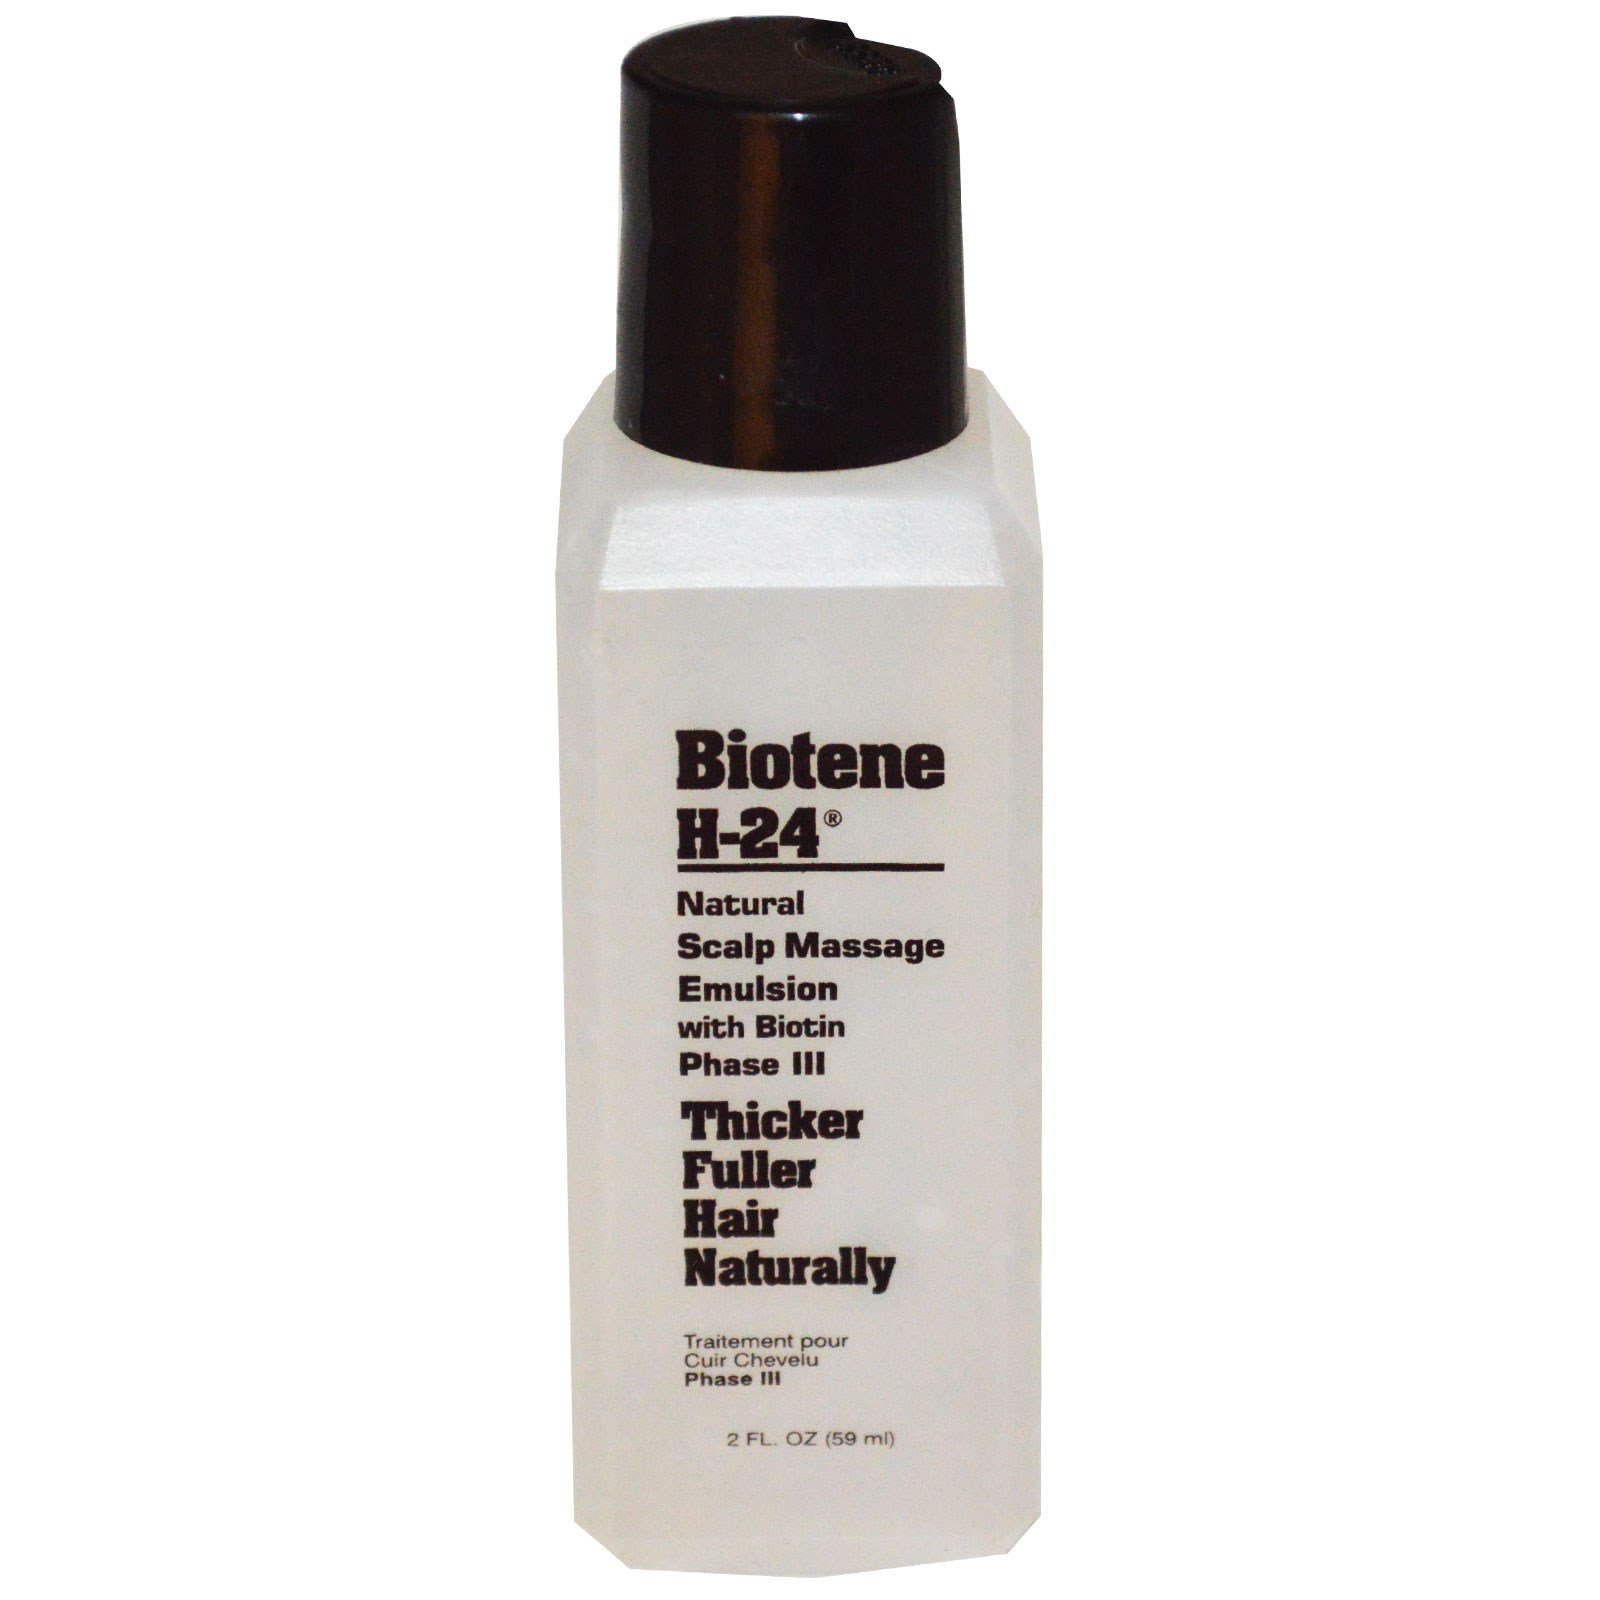 Scalp перевод. • Biotene h-24, natural Scalp massage Emulsion, with Biotin, phase III, 2 FL oz, 59 ml. Эмульсия для волос. Эмульсия для массажа. Mill Creek Biotene.